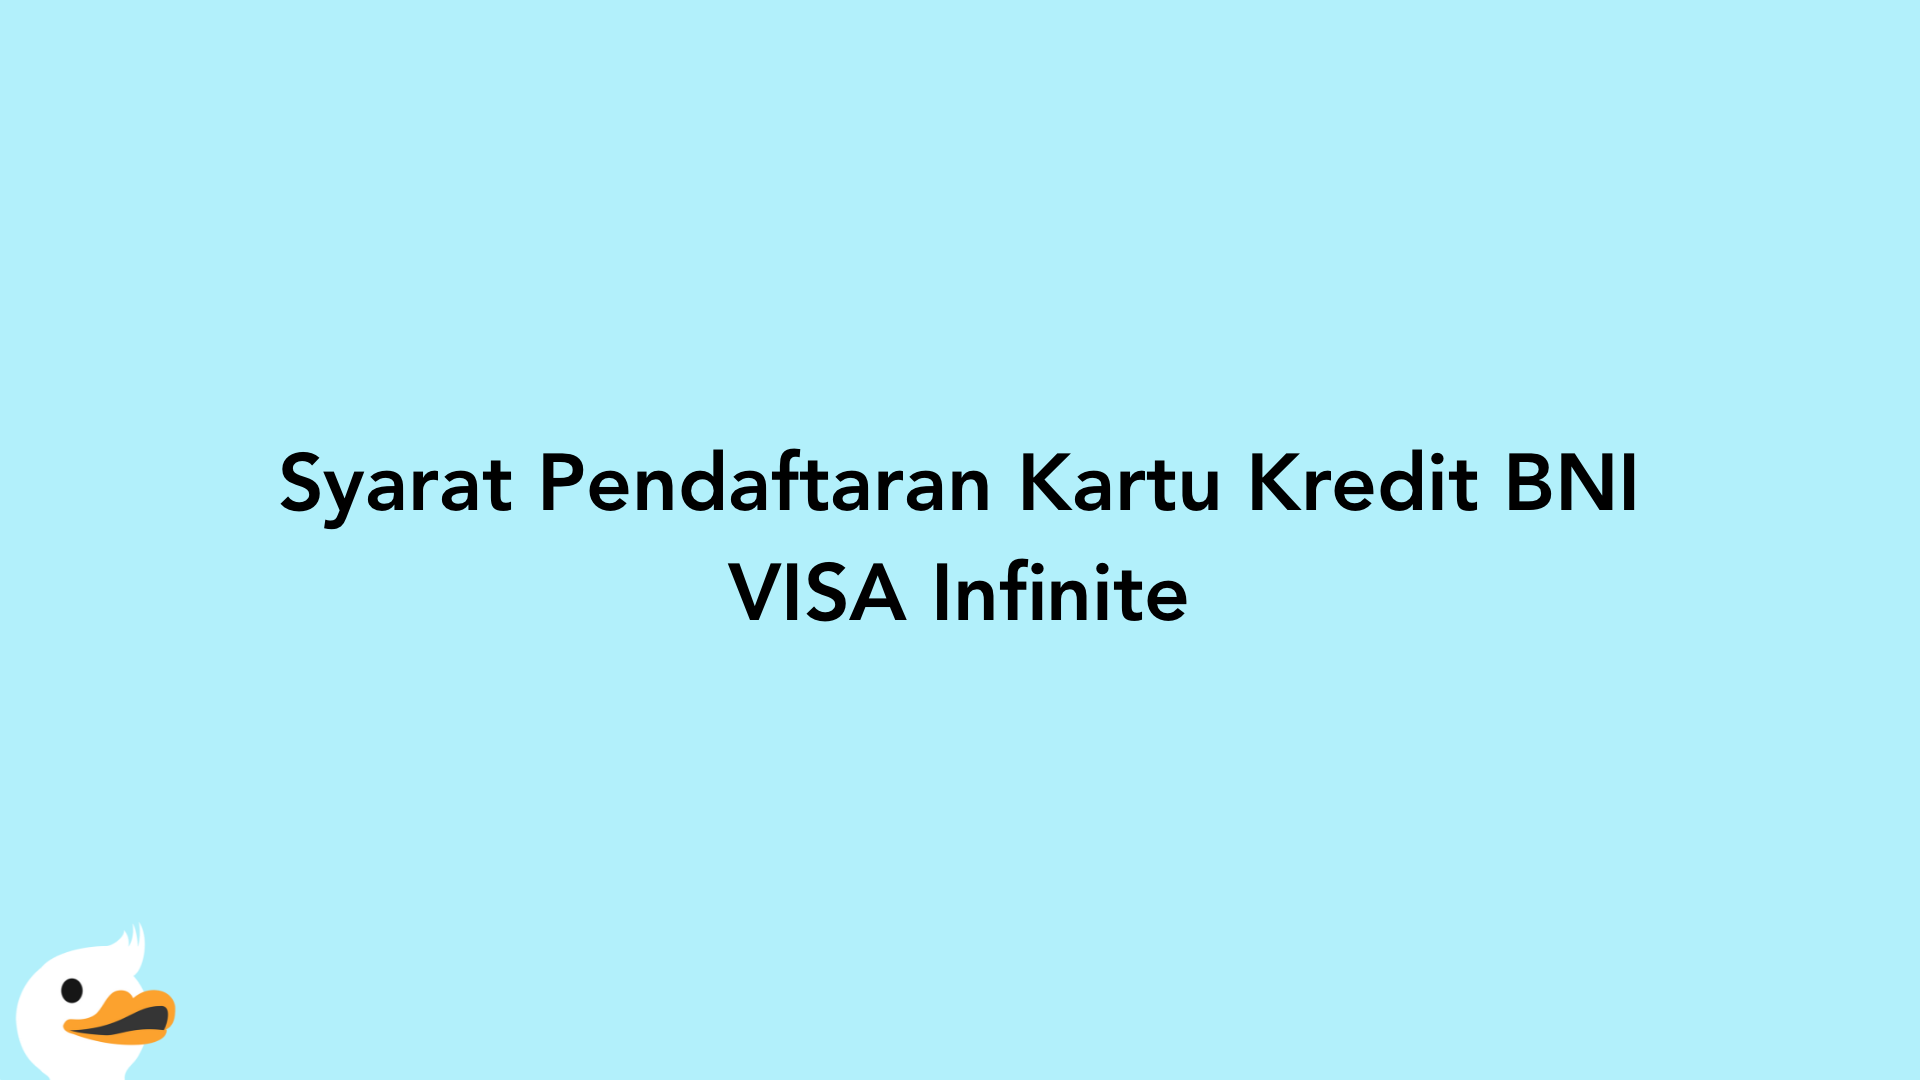 Syarat Pendaftaran Kartu Kredit BNI VISA Infinite